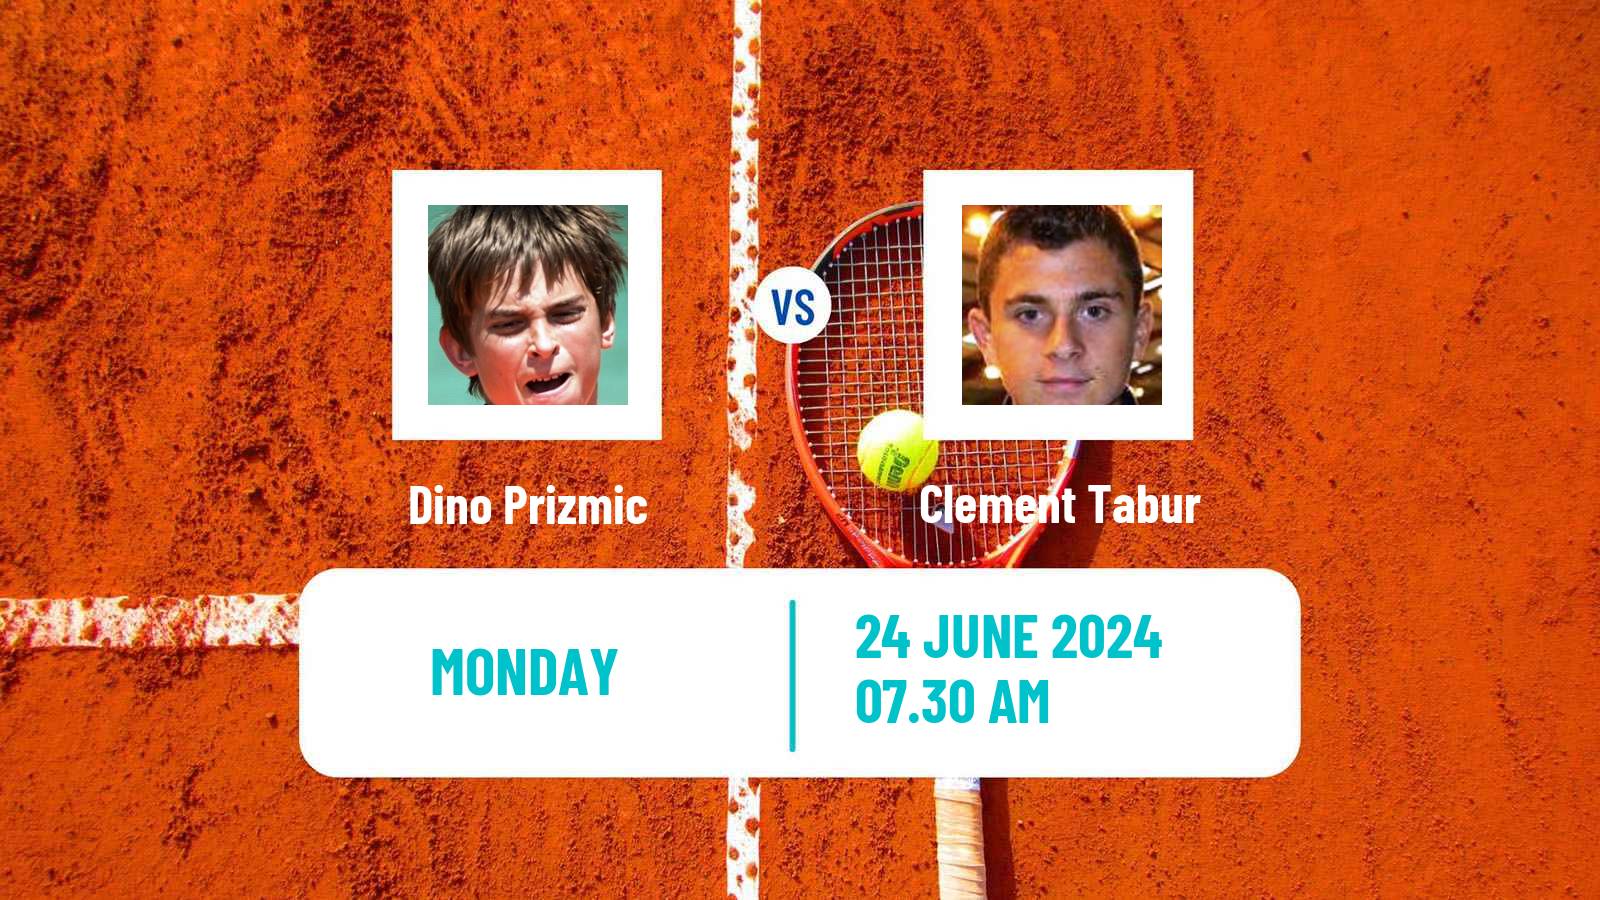 Tennis ATP Wimbledon Dino Prizmic - Clement Tabur